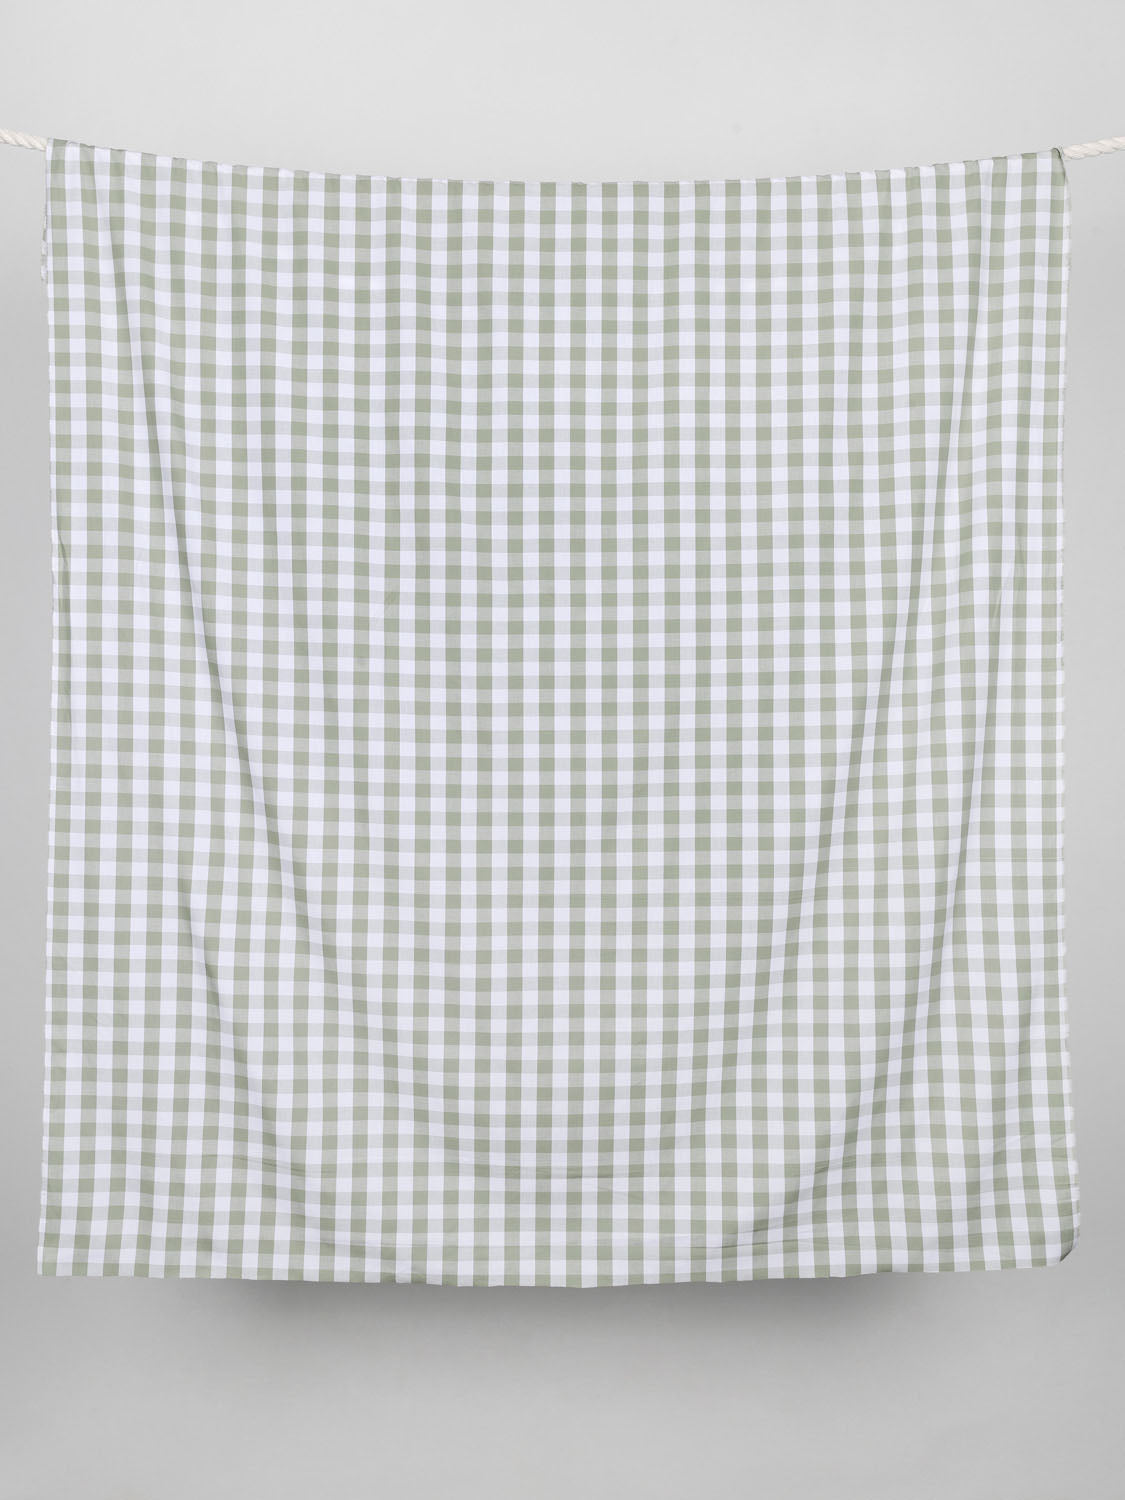 Large Scale Yarn-Dyed Gingham Cotton - Matcha + White | Core Fabrics